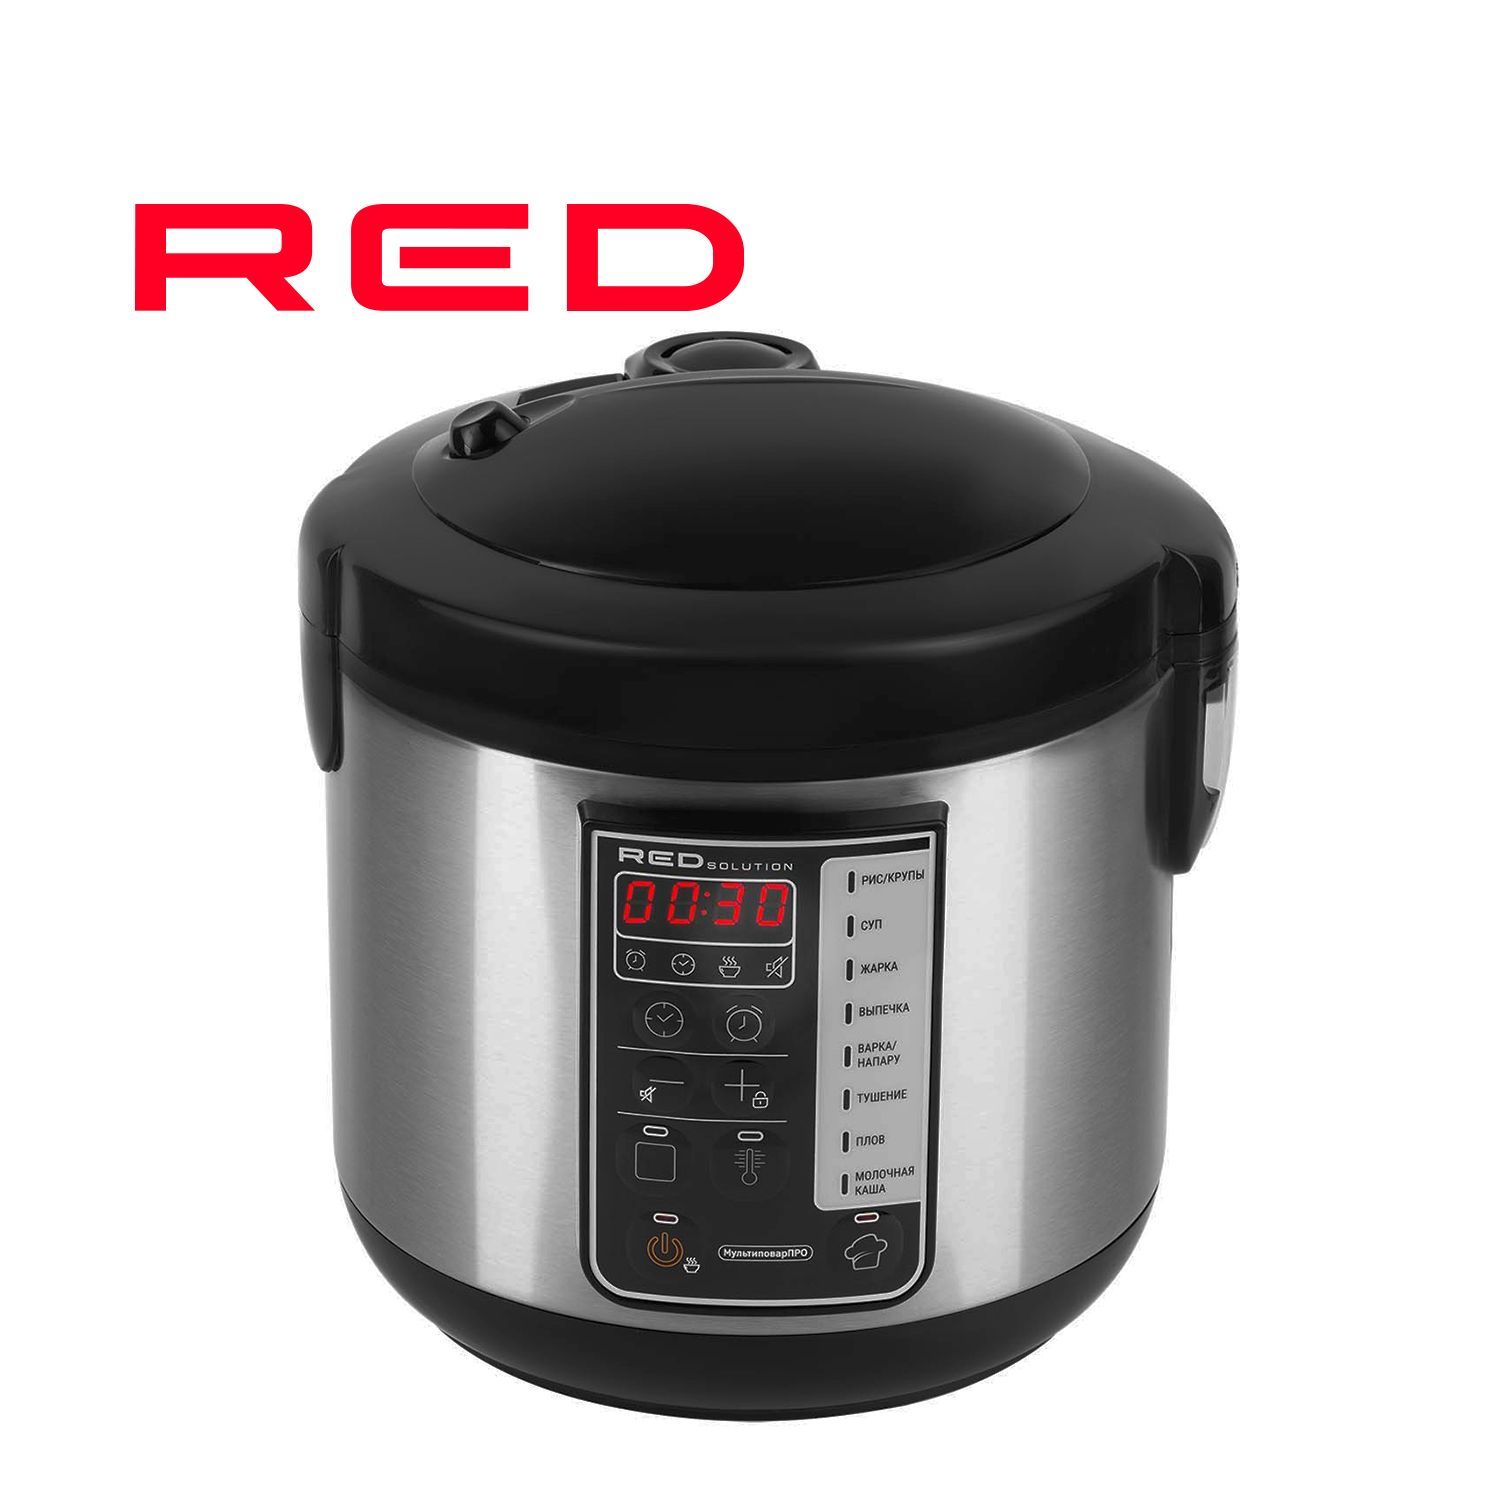 Мультиварка Red solution RMC-88. Мультиварка Red solution COLORCOOK RMC-88. Мультиварка Red solution RMC-m227s. Мультиварка DEXP. Мультиварка red solution rmc m25